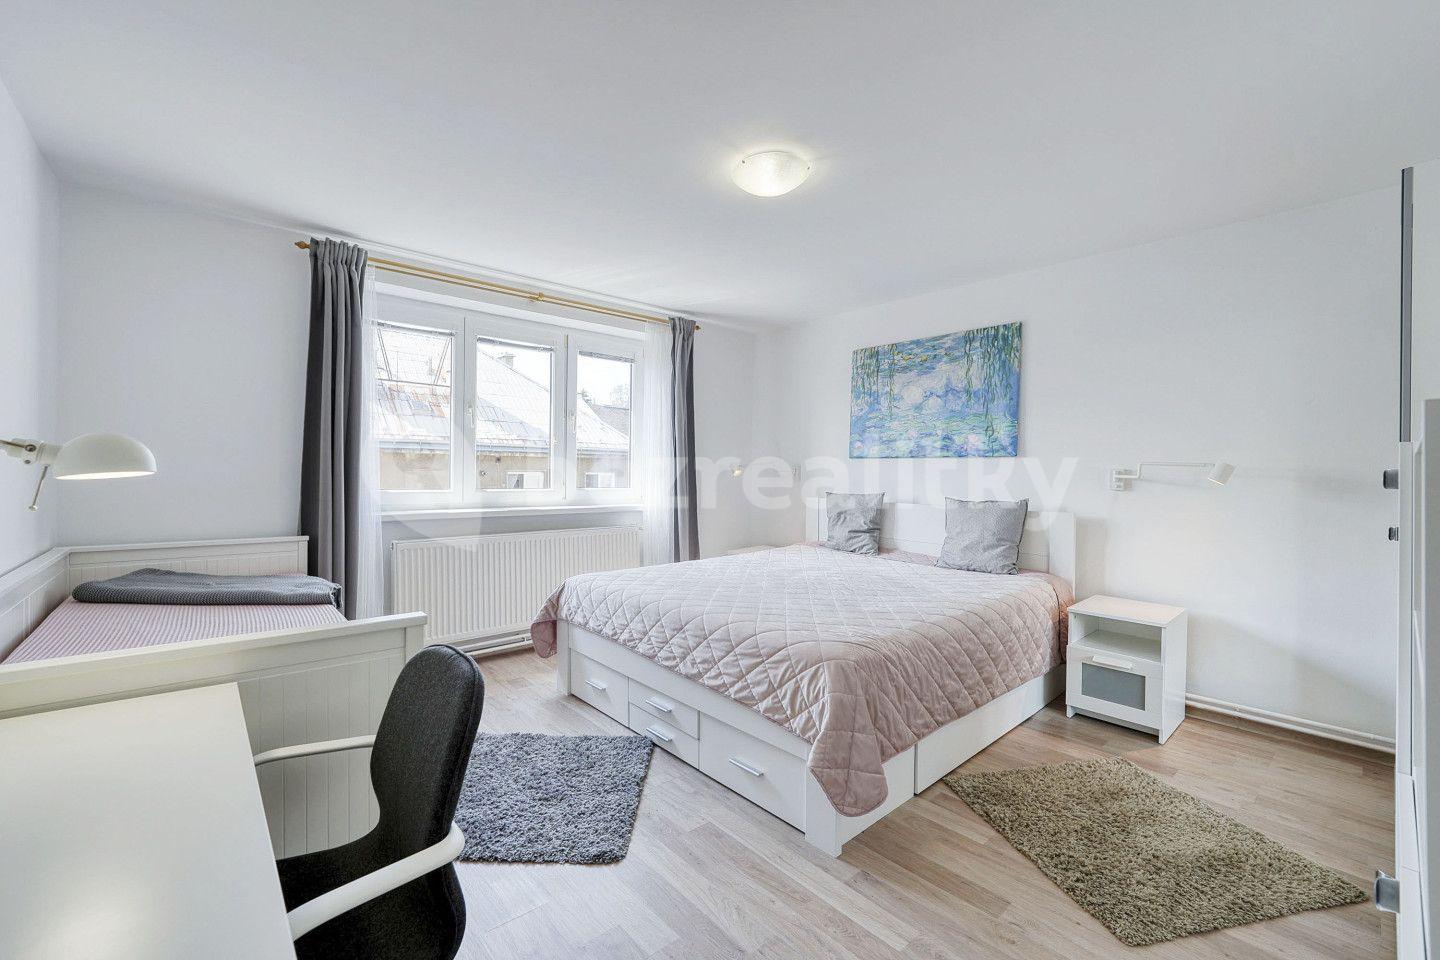 3 bedroom flat for sale, 55 m², Bratří Čapků, Nejdek, Karlovarský Region